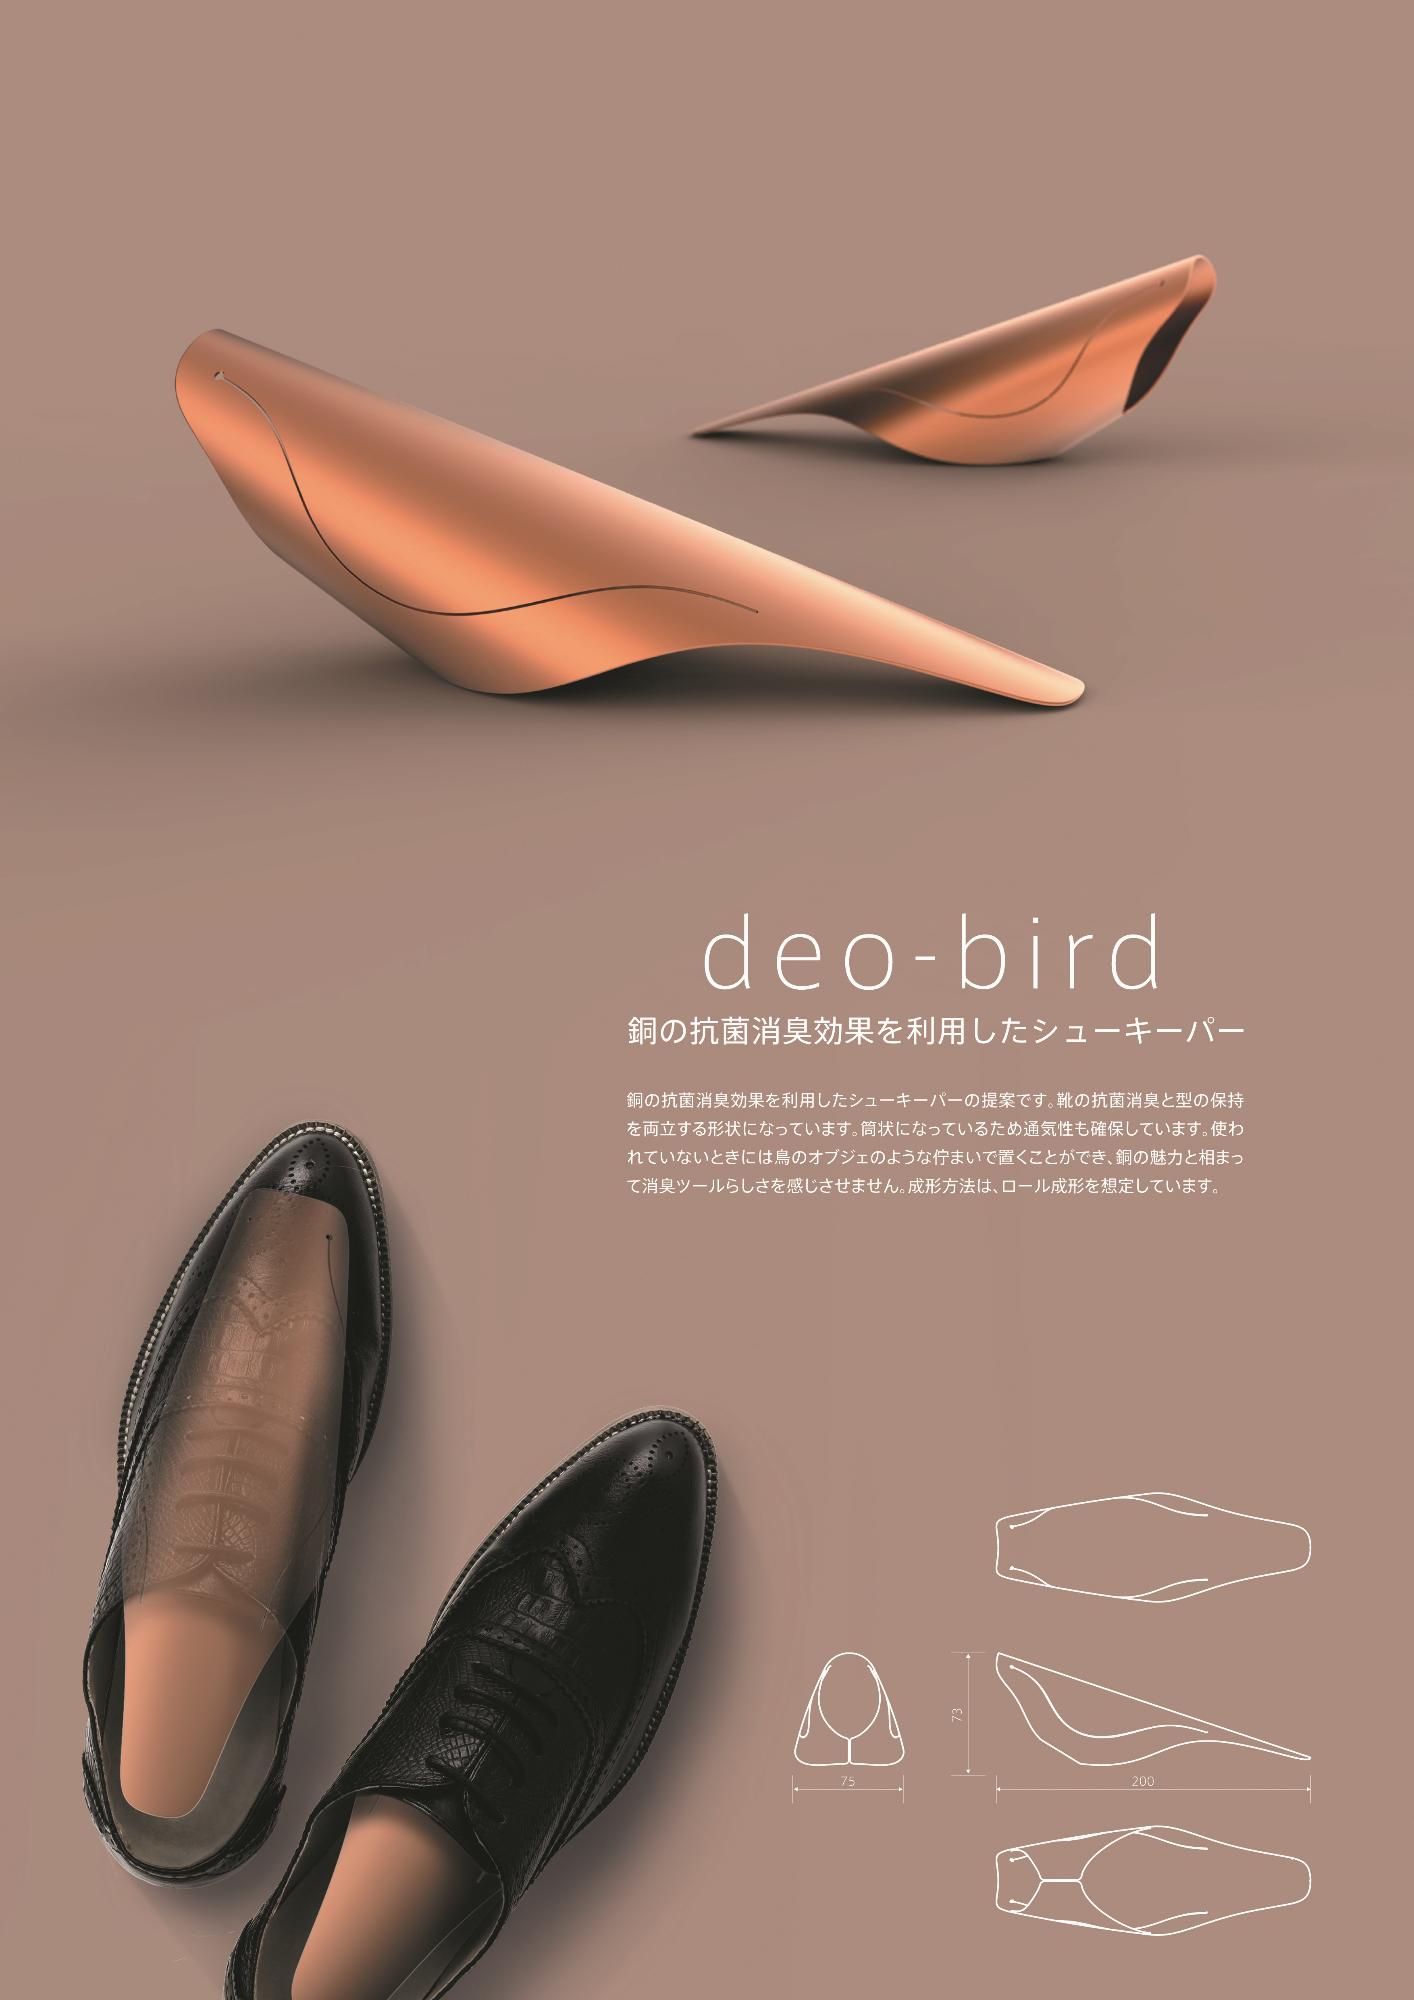 準大賞受賞作品「deo-bird」のコンセプトイメージカタログ